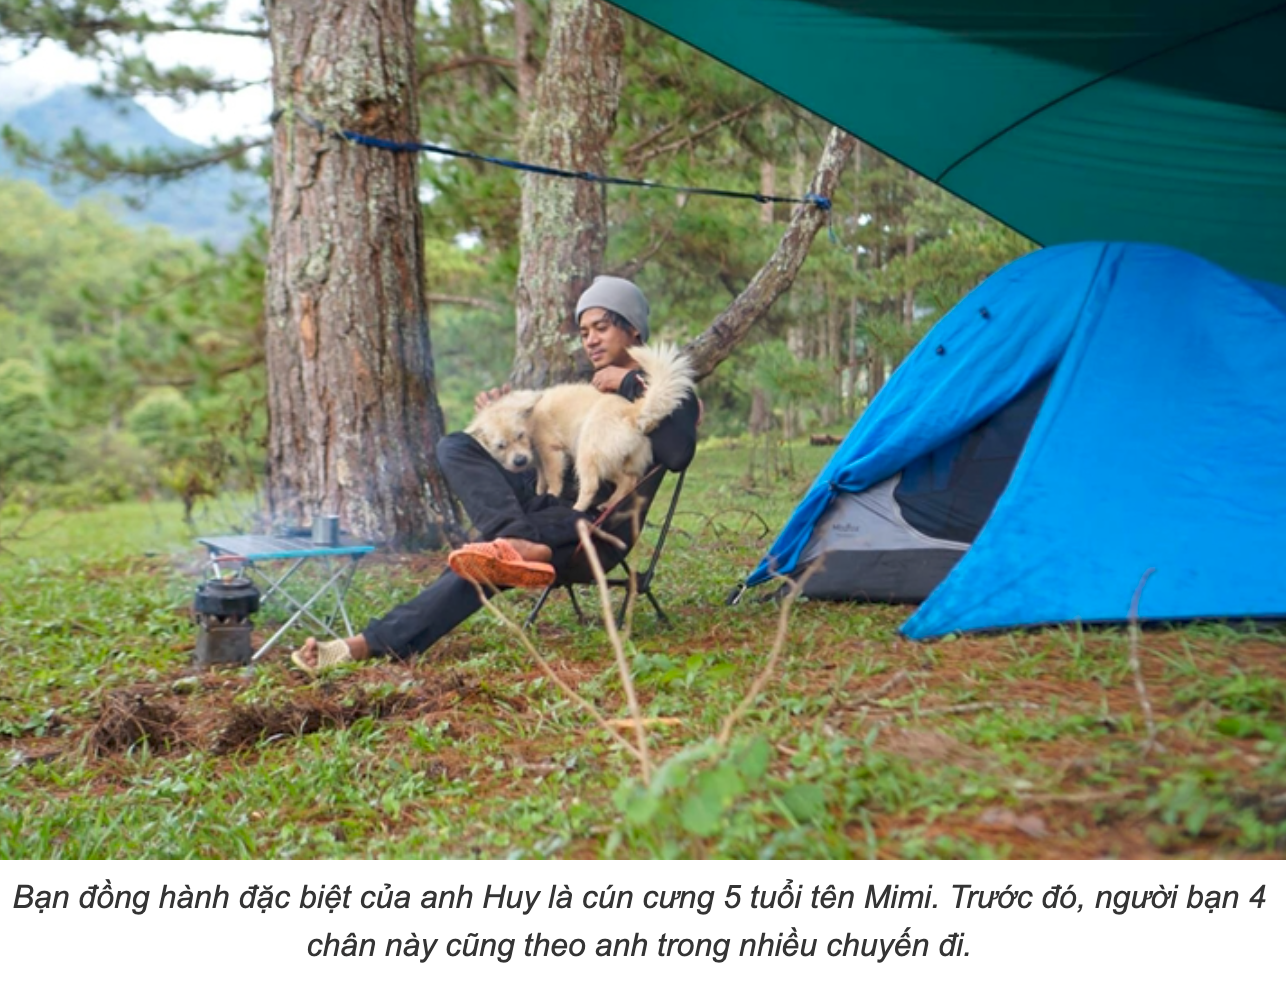 Đi cắm trại, 4 người kẹt trên núi ở Bà Rịa - Vũng Tàu 1,5 tháng vì dịch